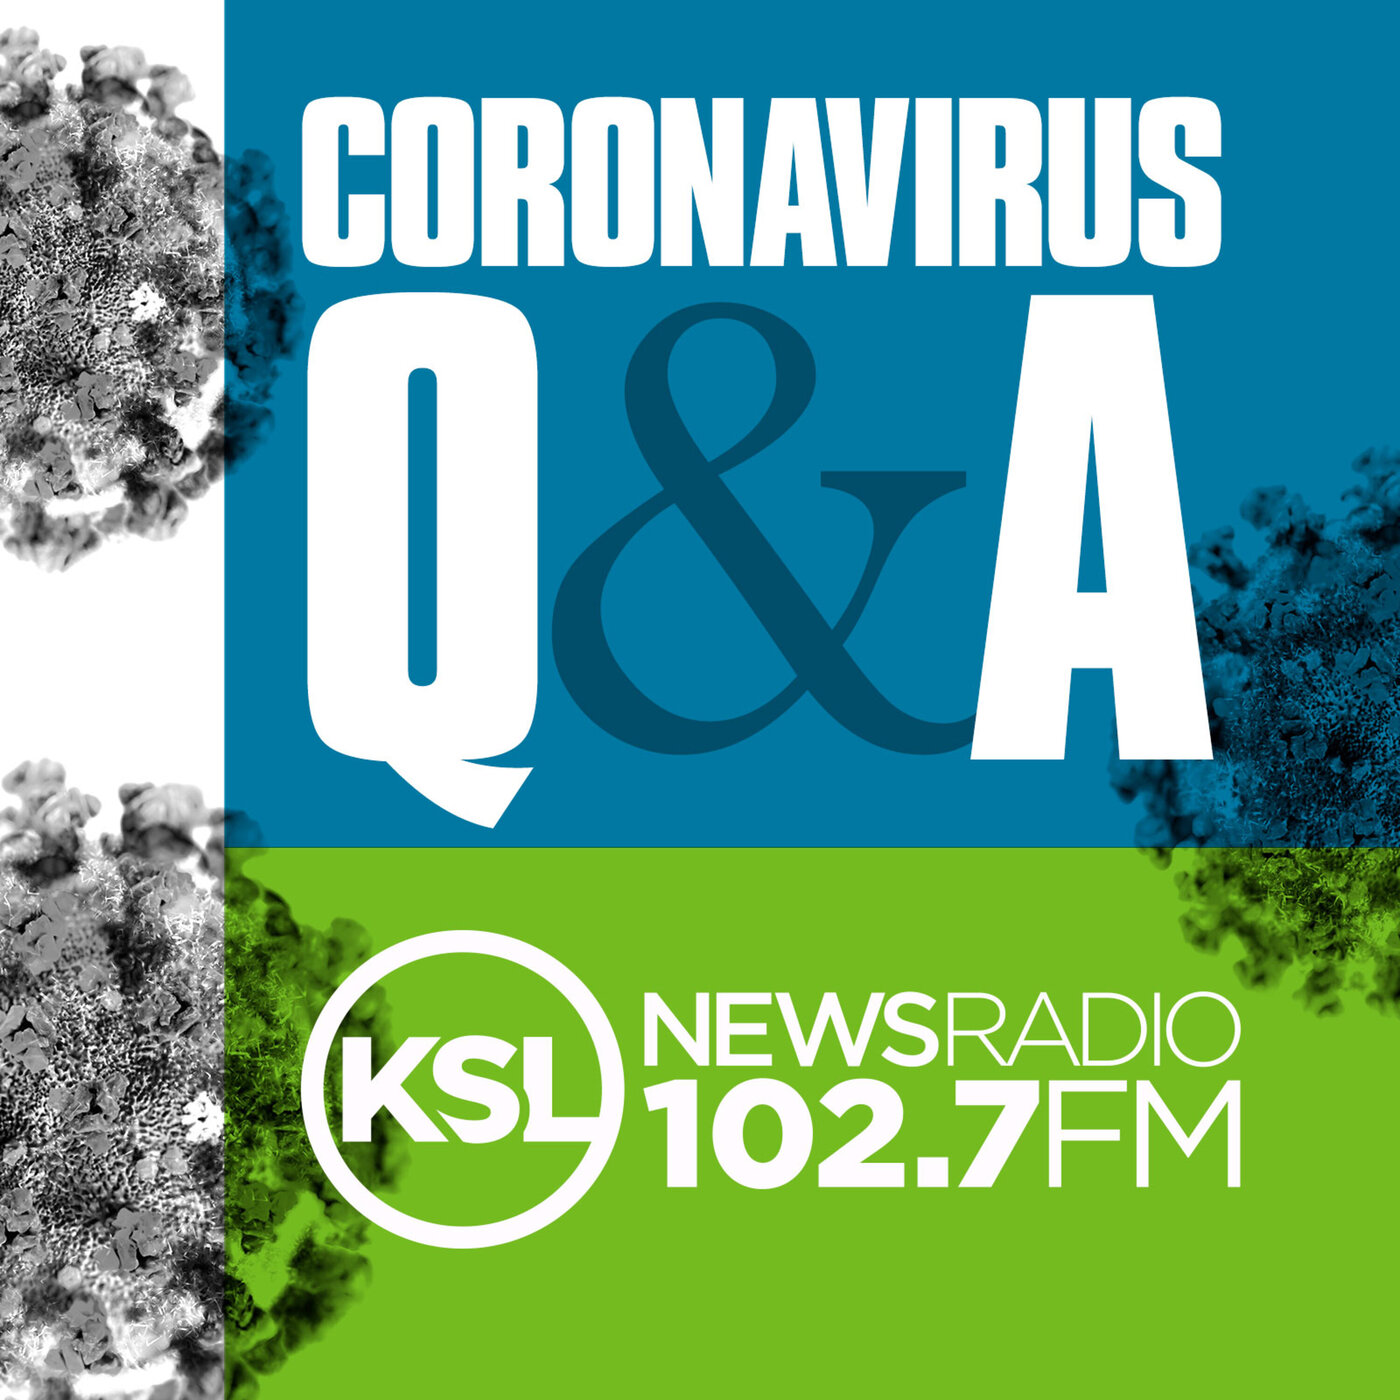 Coronavirus Update November 1st